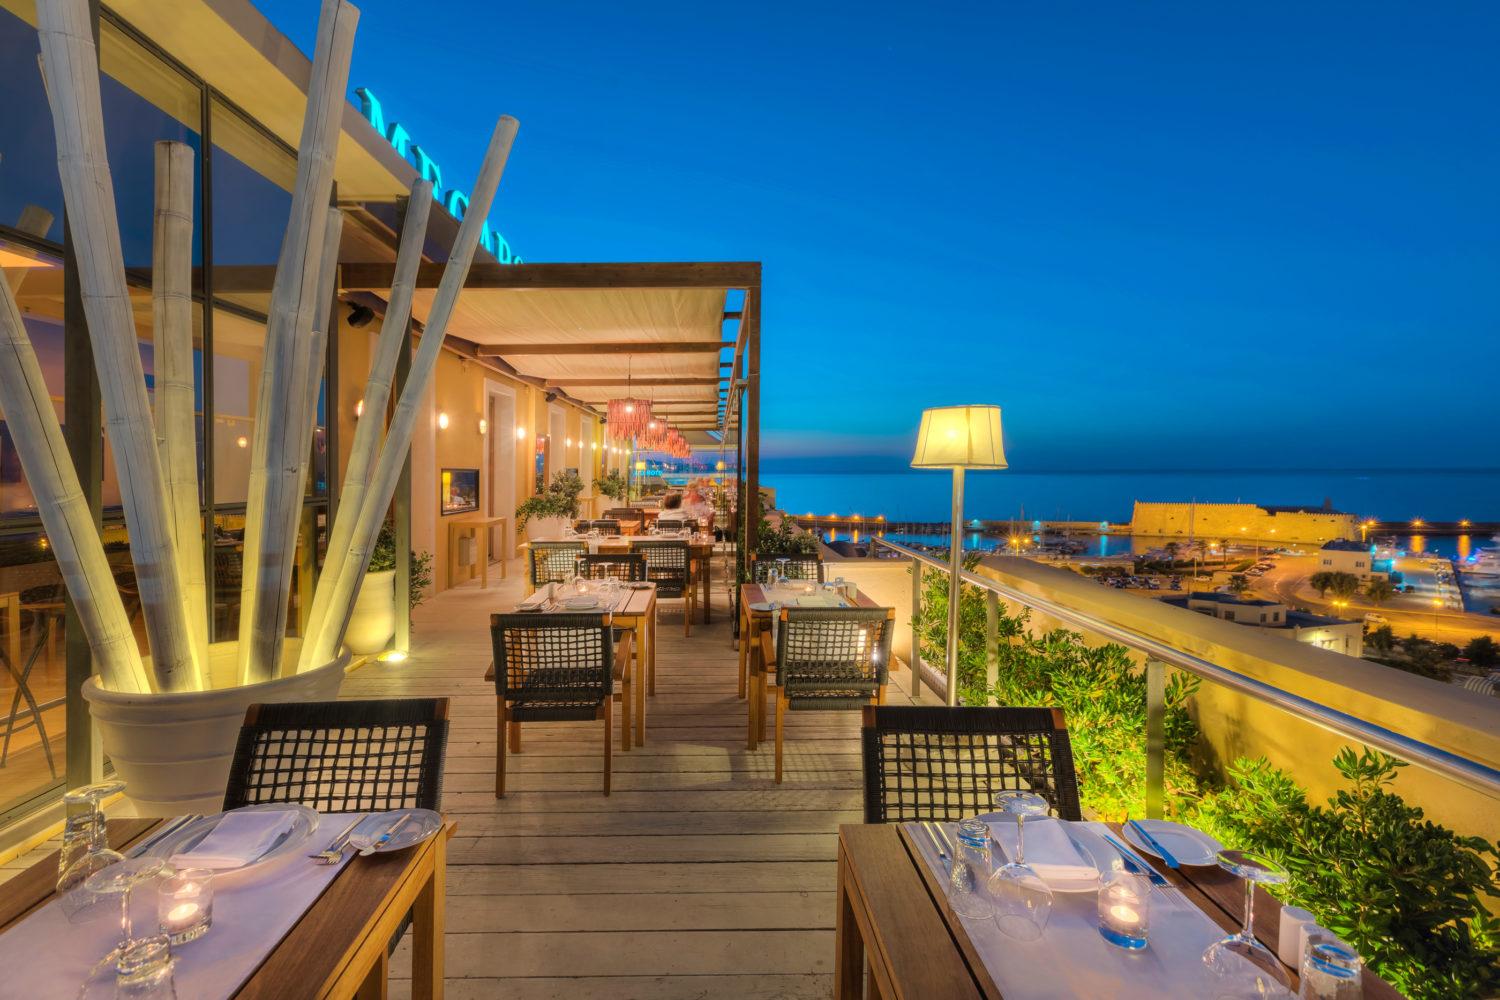 5 Best Romantic Restaurants in Heraklion